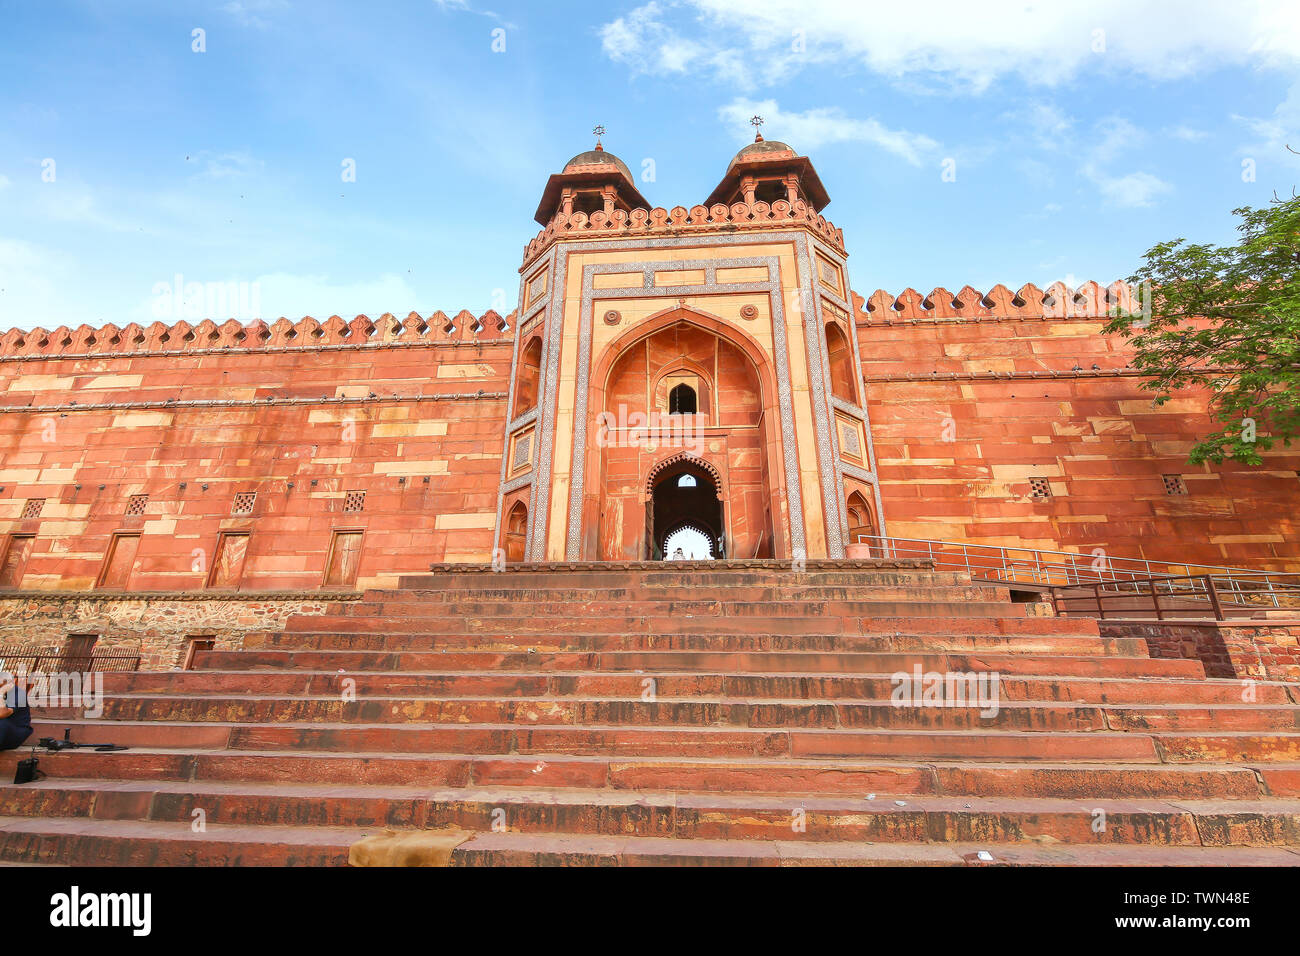 Fatehpur Sikri ingresso principale di fort costruito con pietra arenaria rossa con marmo bianco scolpiti con lunghe scale di pietra a Agra India. Foto Stock